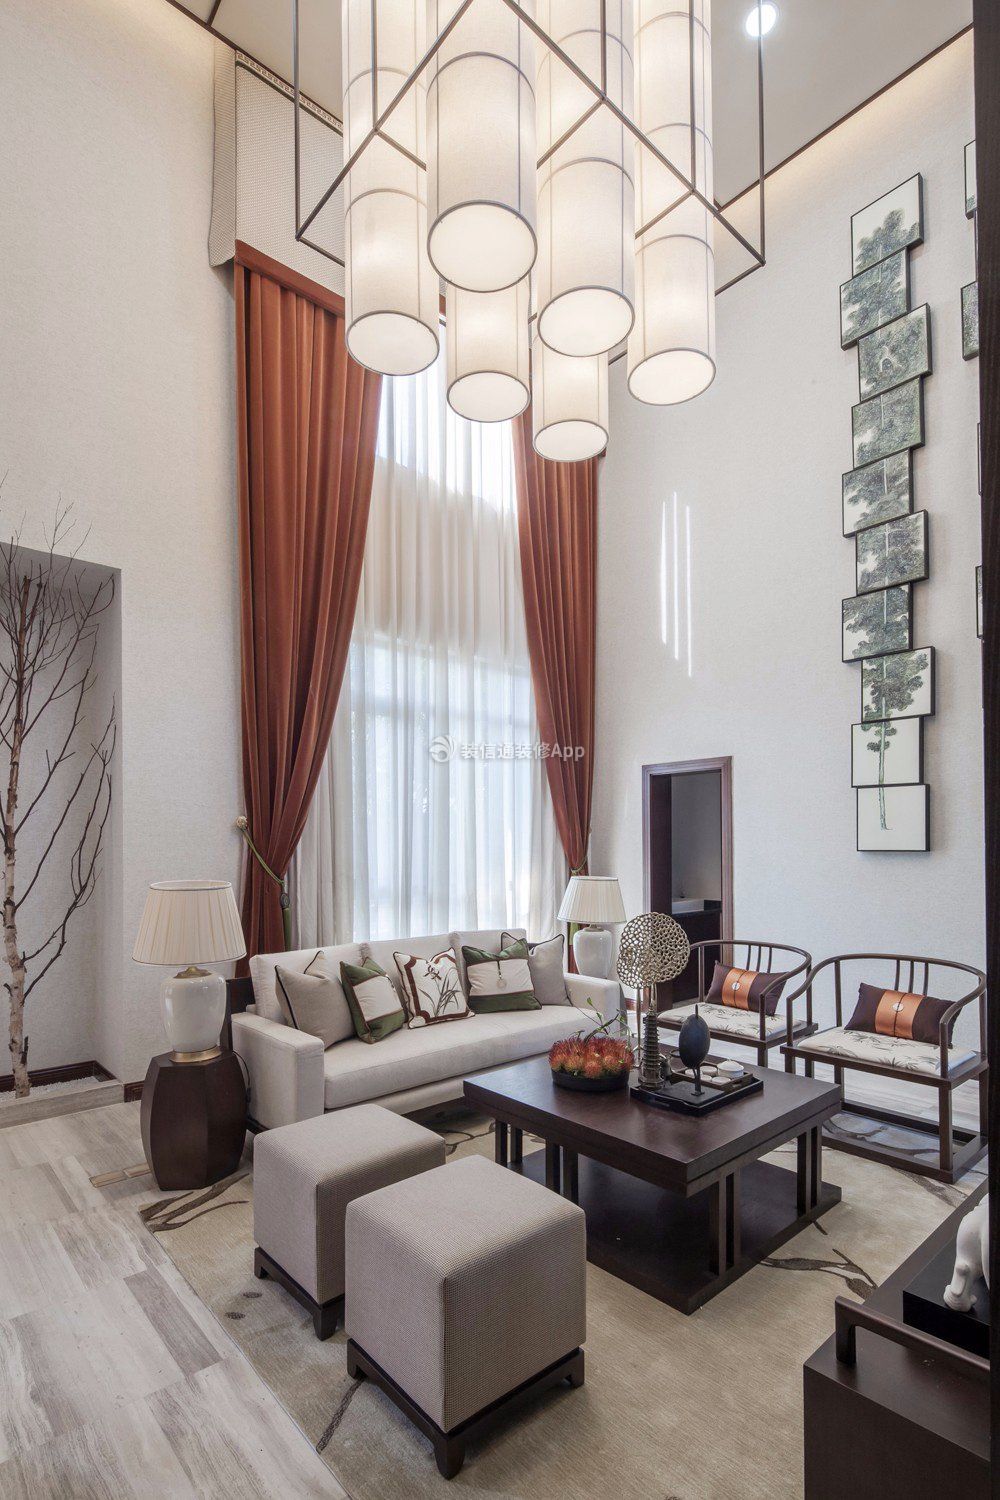 新中式风格别墅客厅窗帘装修设计图: